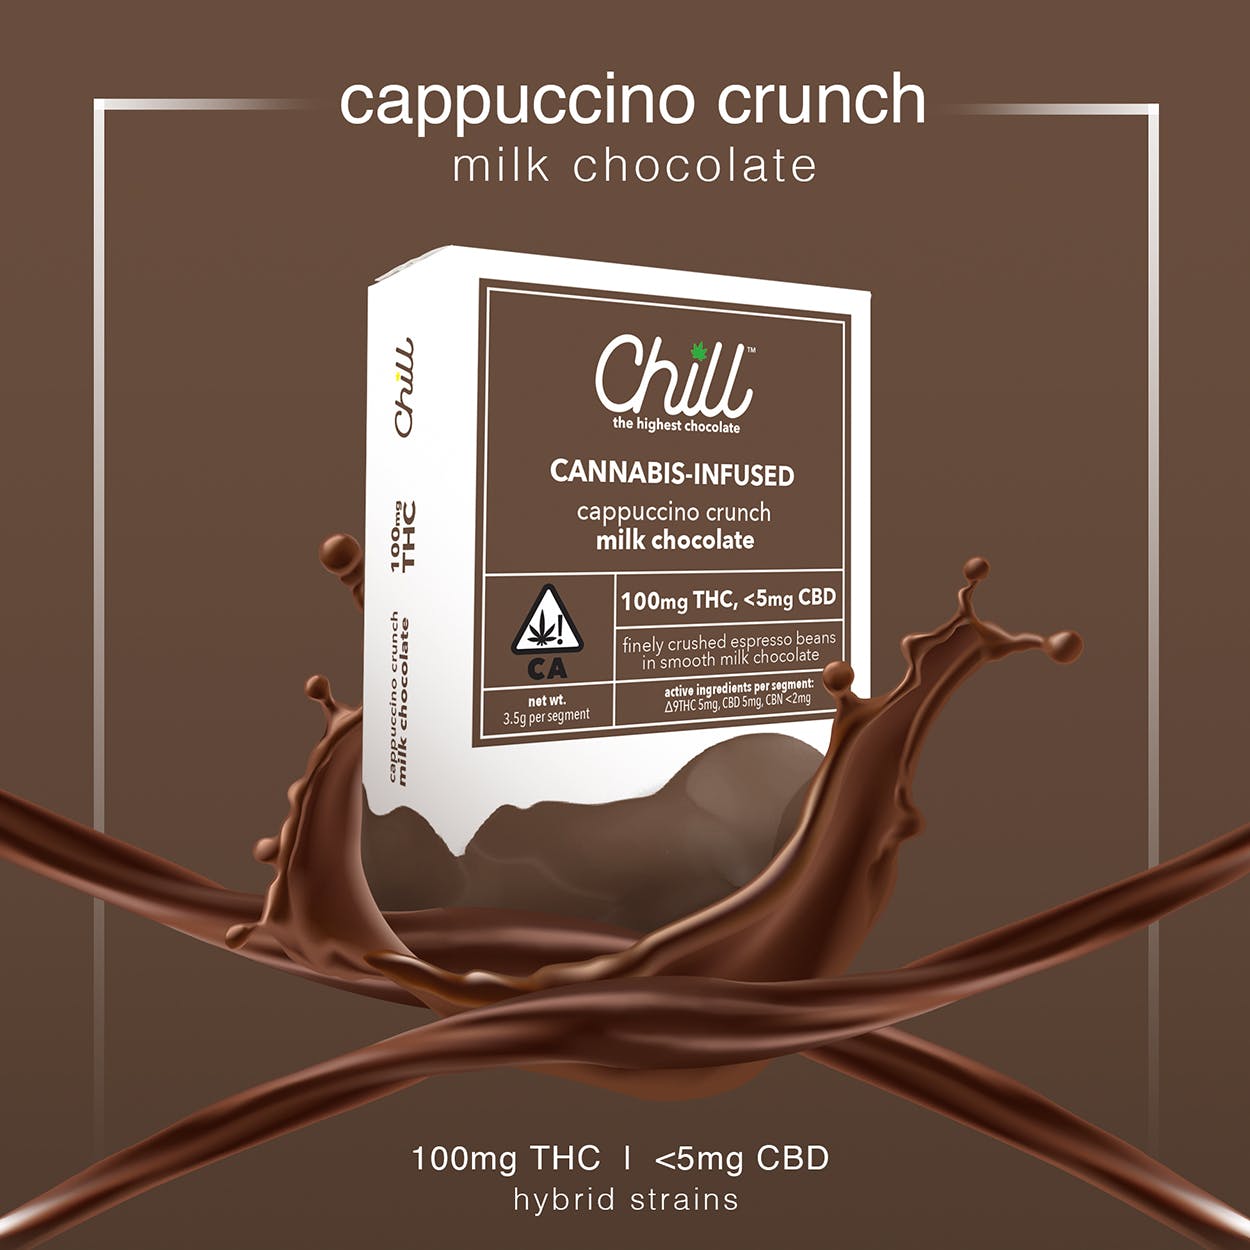 Chill- Cappuccino Crunch Milk Chocolate